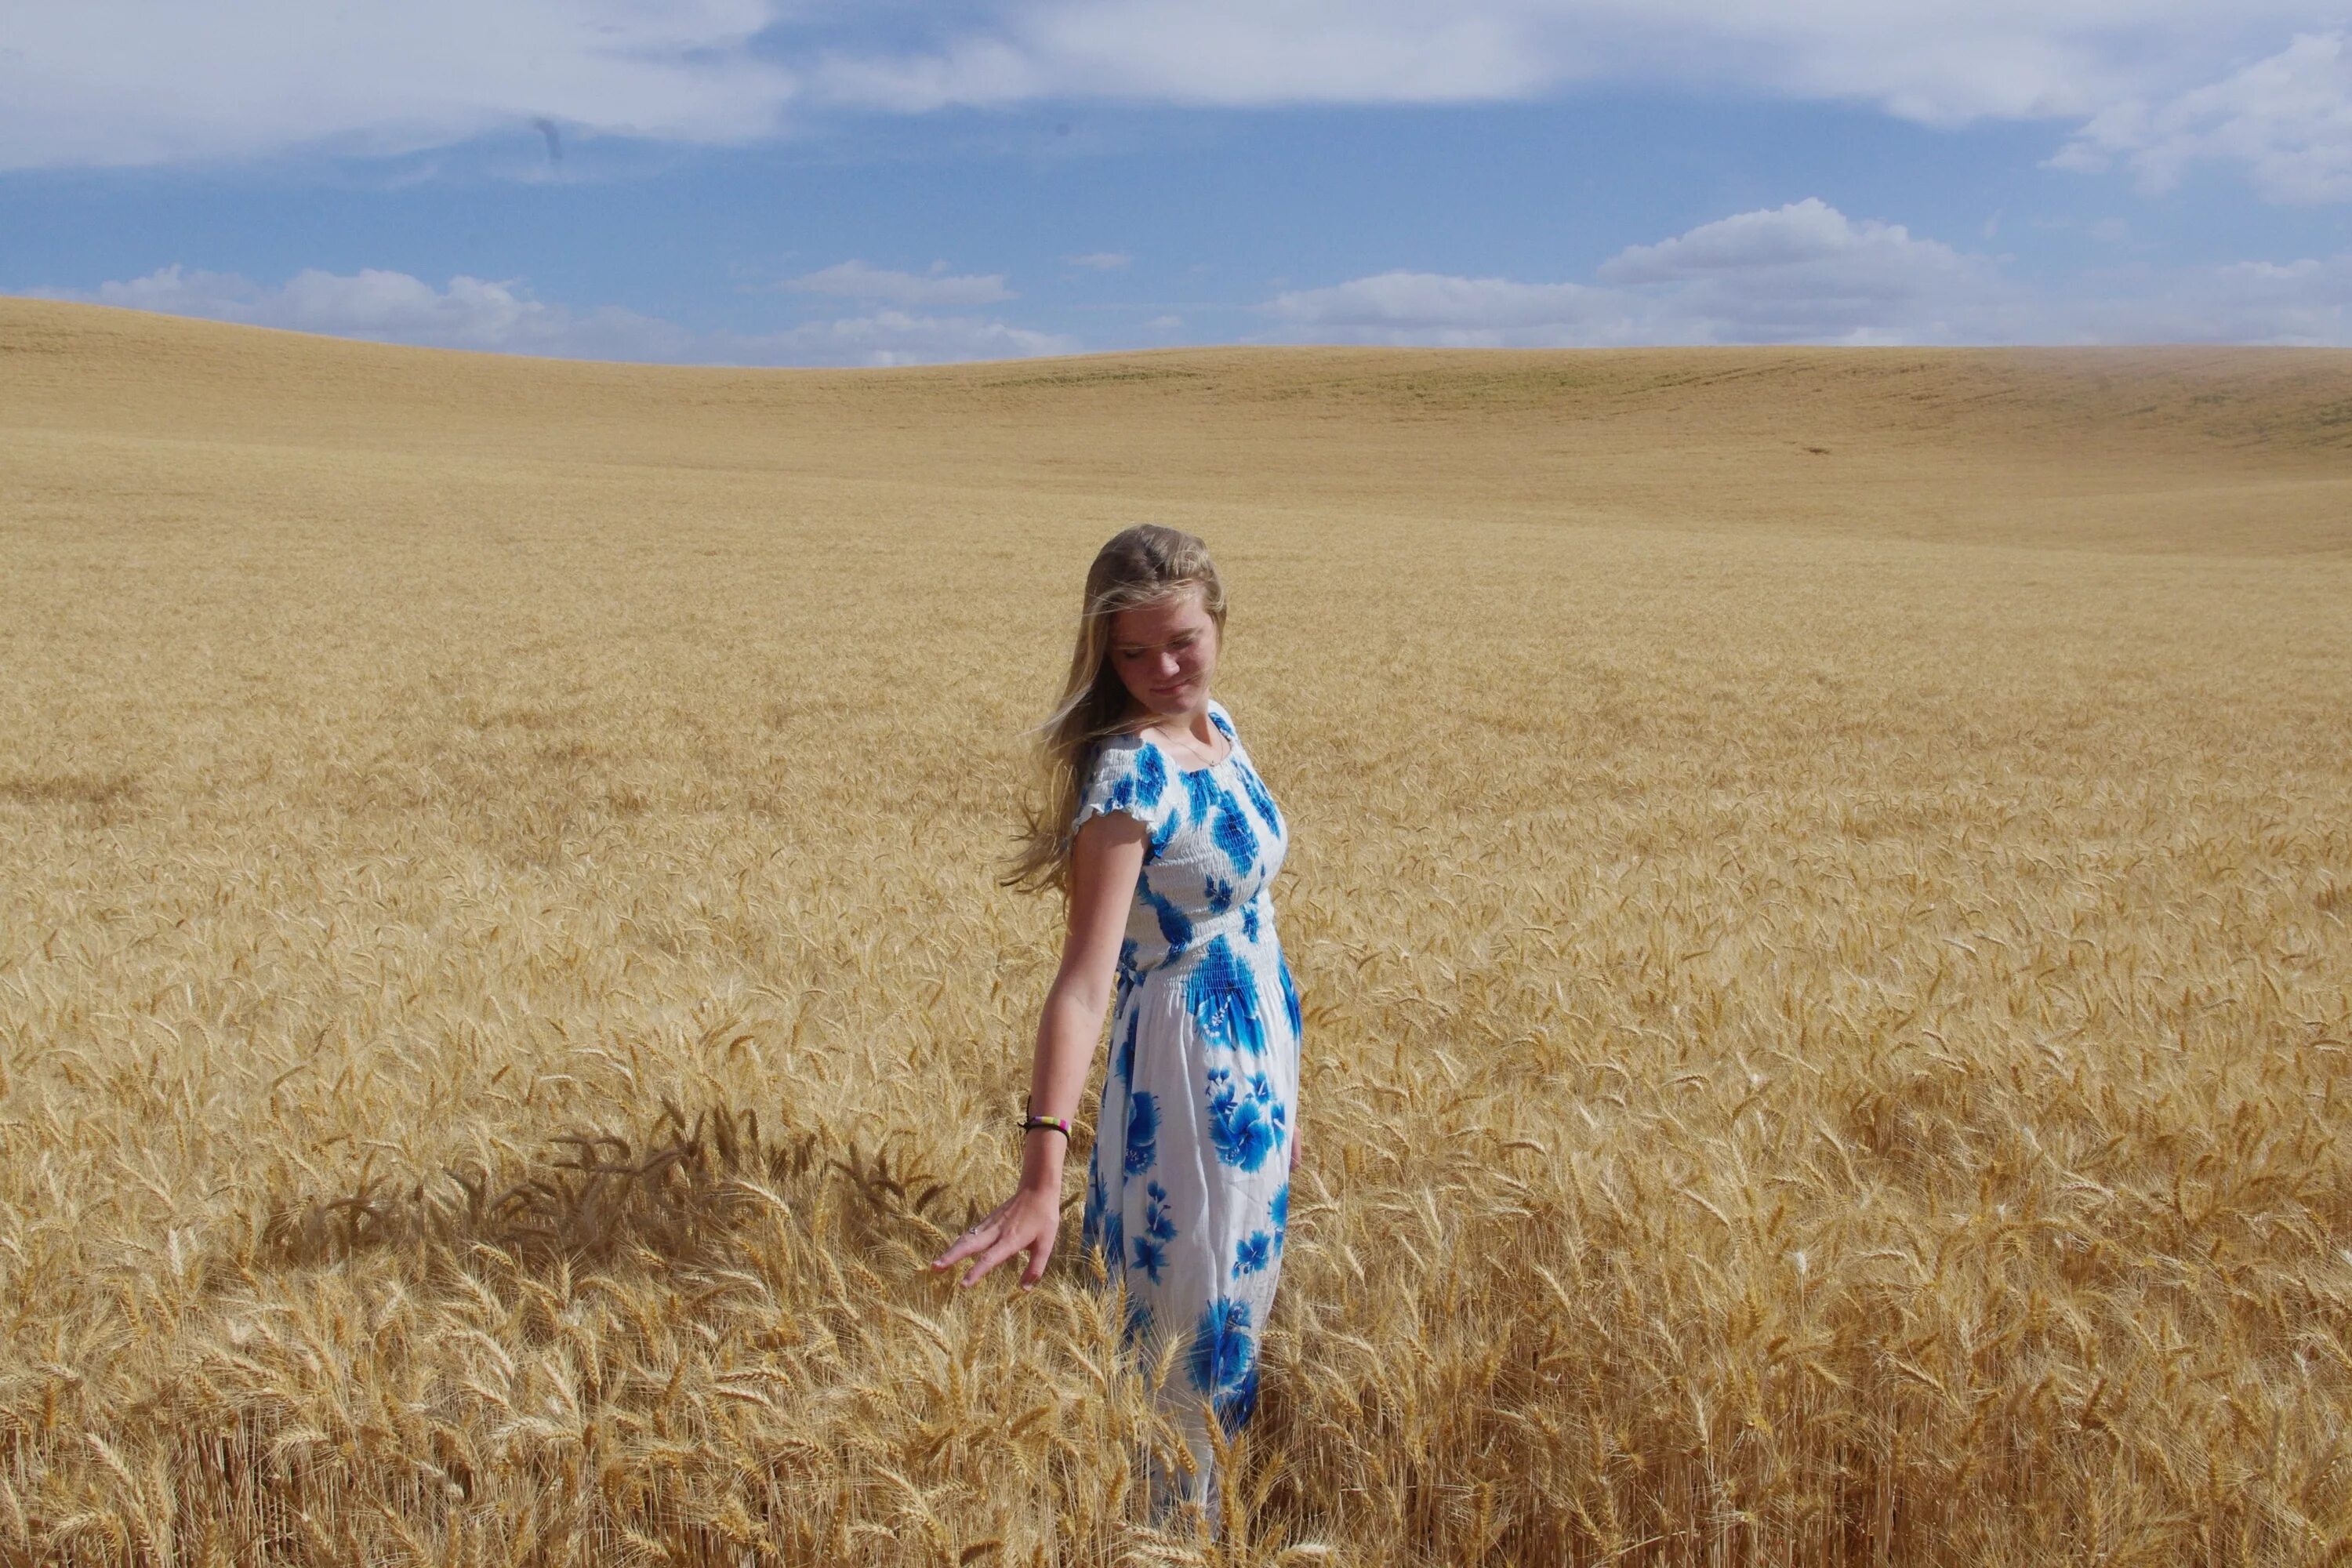 Фотосессия в пшеничном поле. Девушка в поле. Девушка в пшеничном поле. Фотосессия в пшеничном поле в голубом платье.